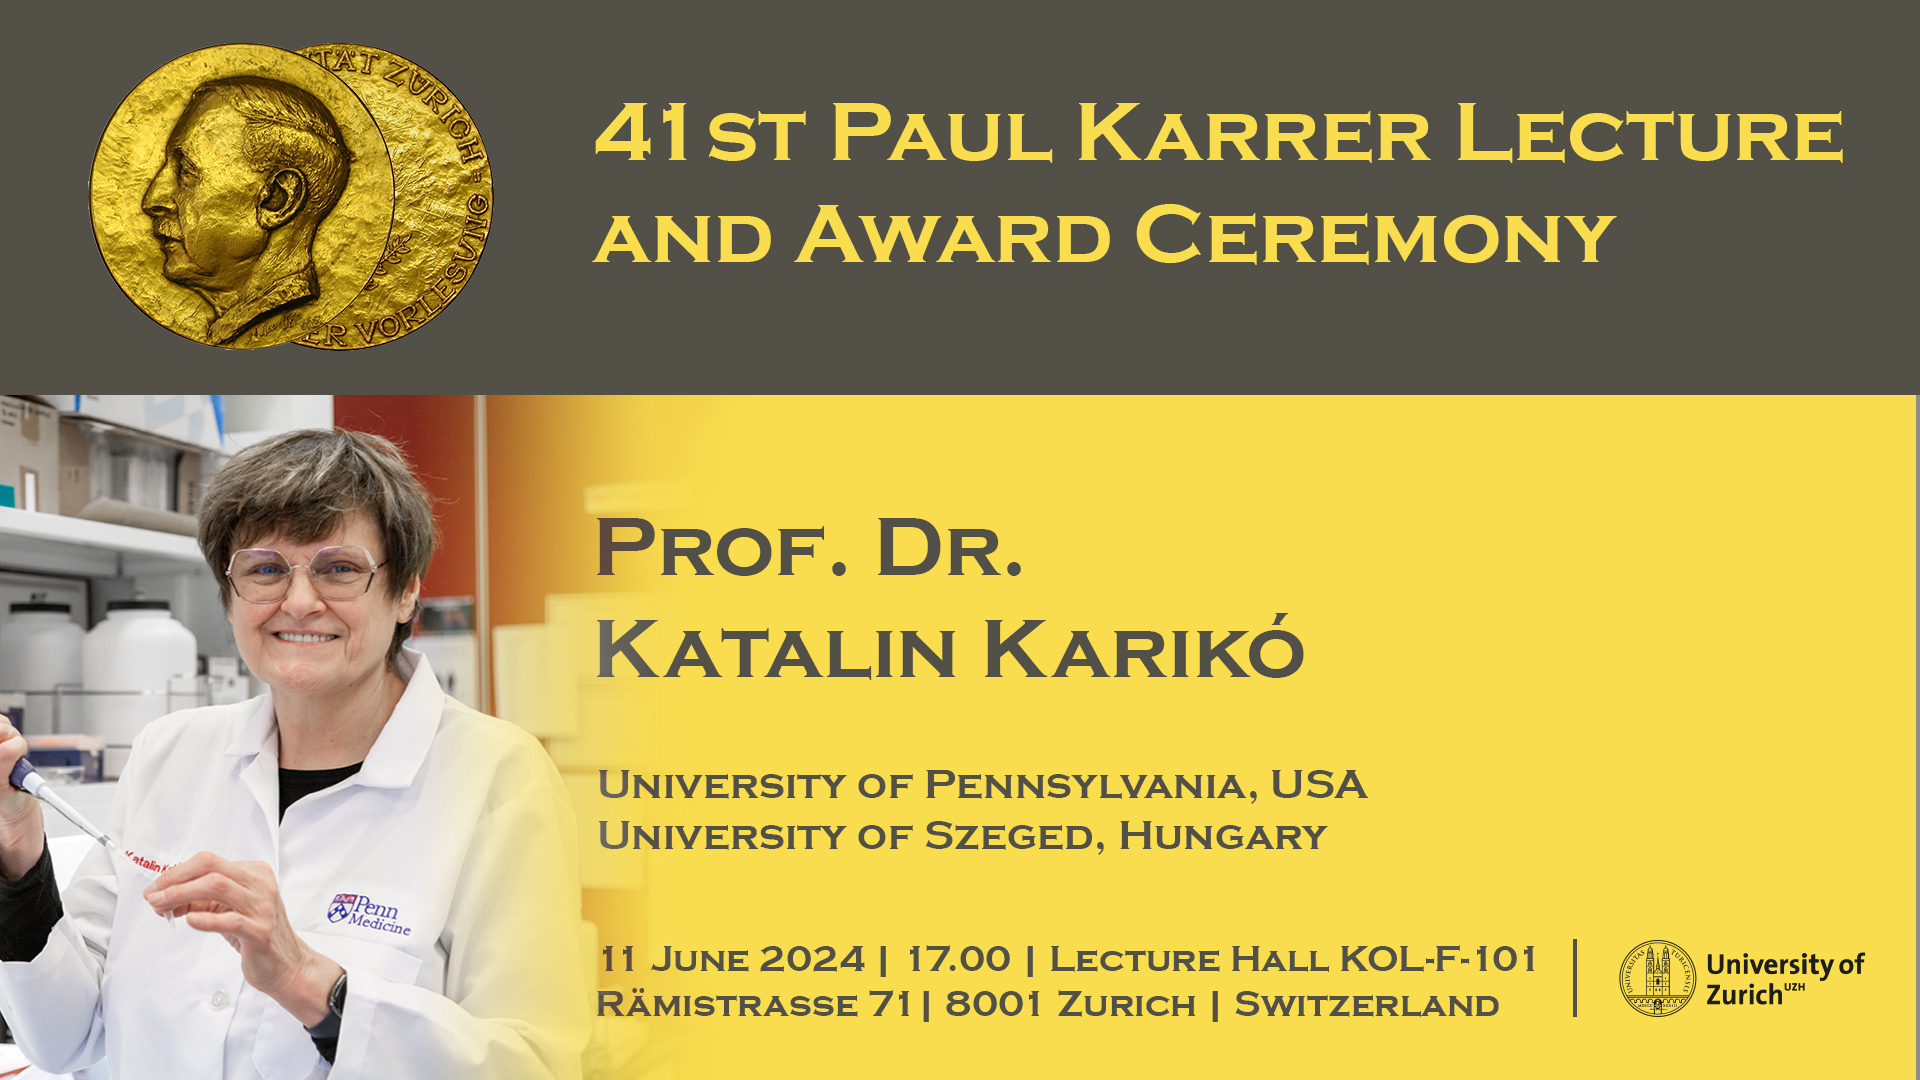 Paul Karrer Lecture 2024